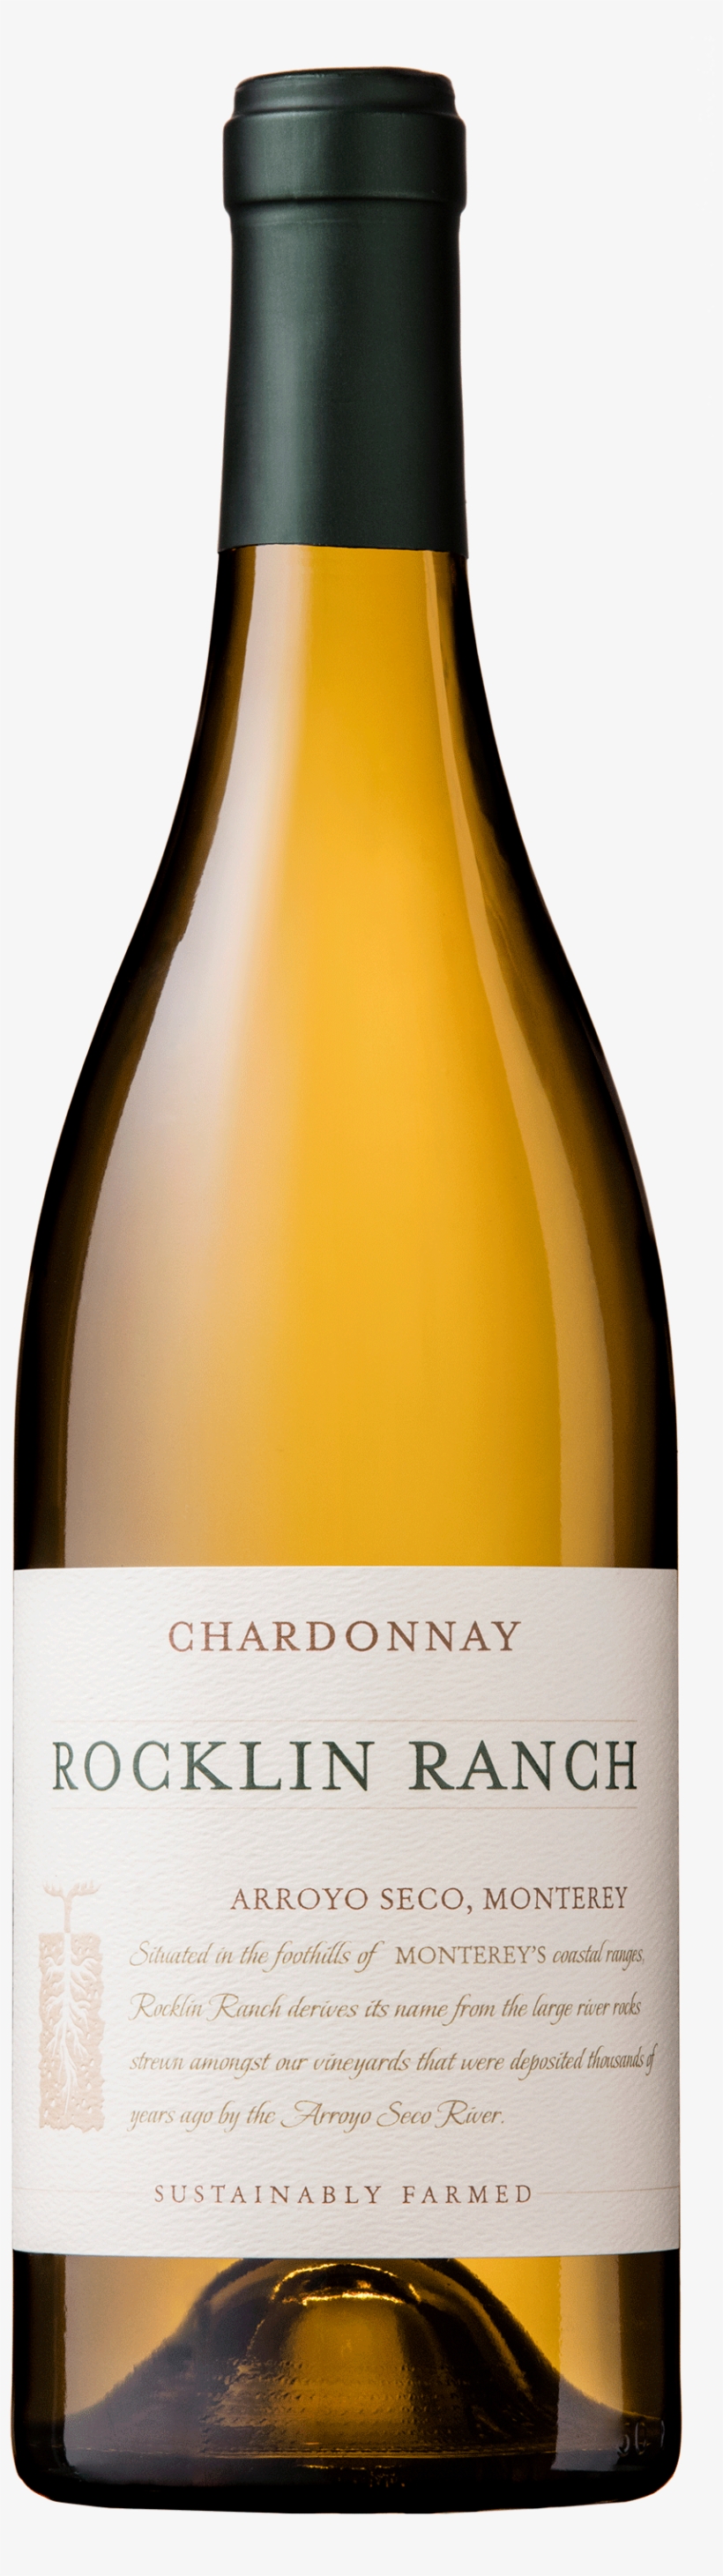 Bottle Images - Rocklin Ranch Chardonnay, transparent png #3018844